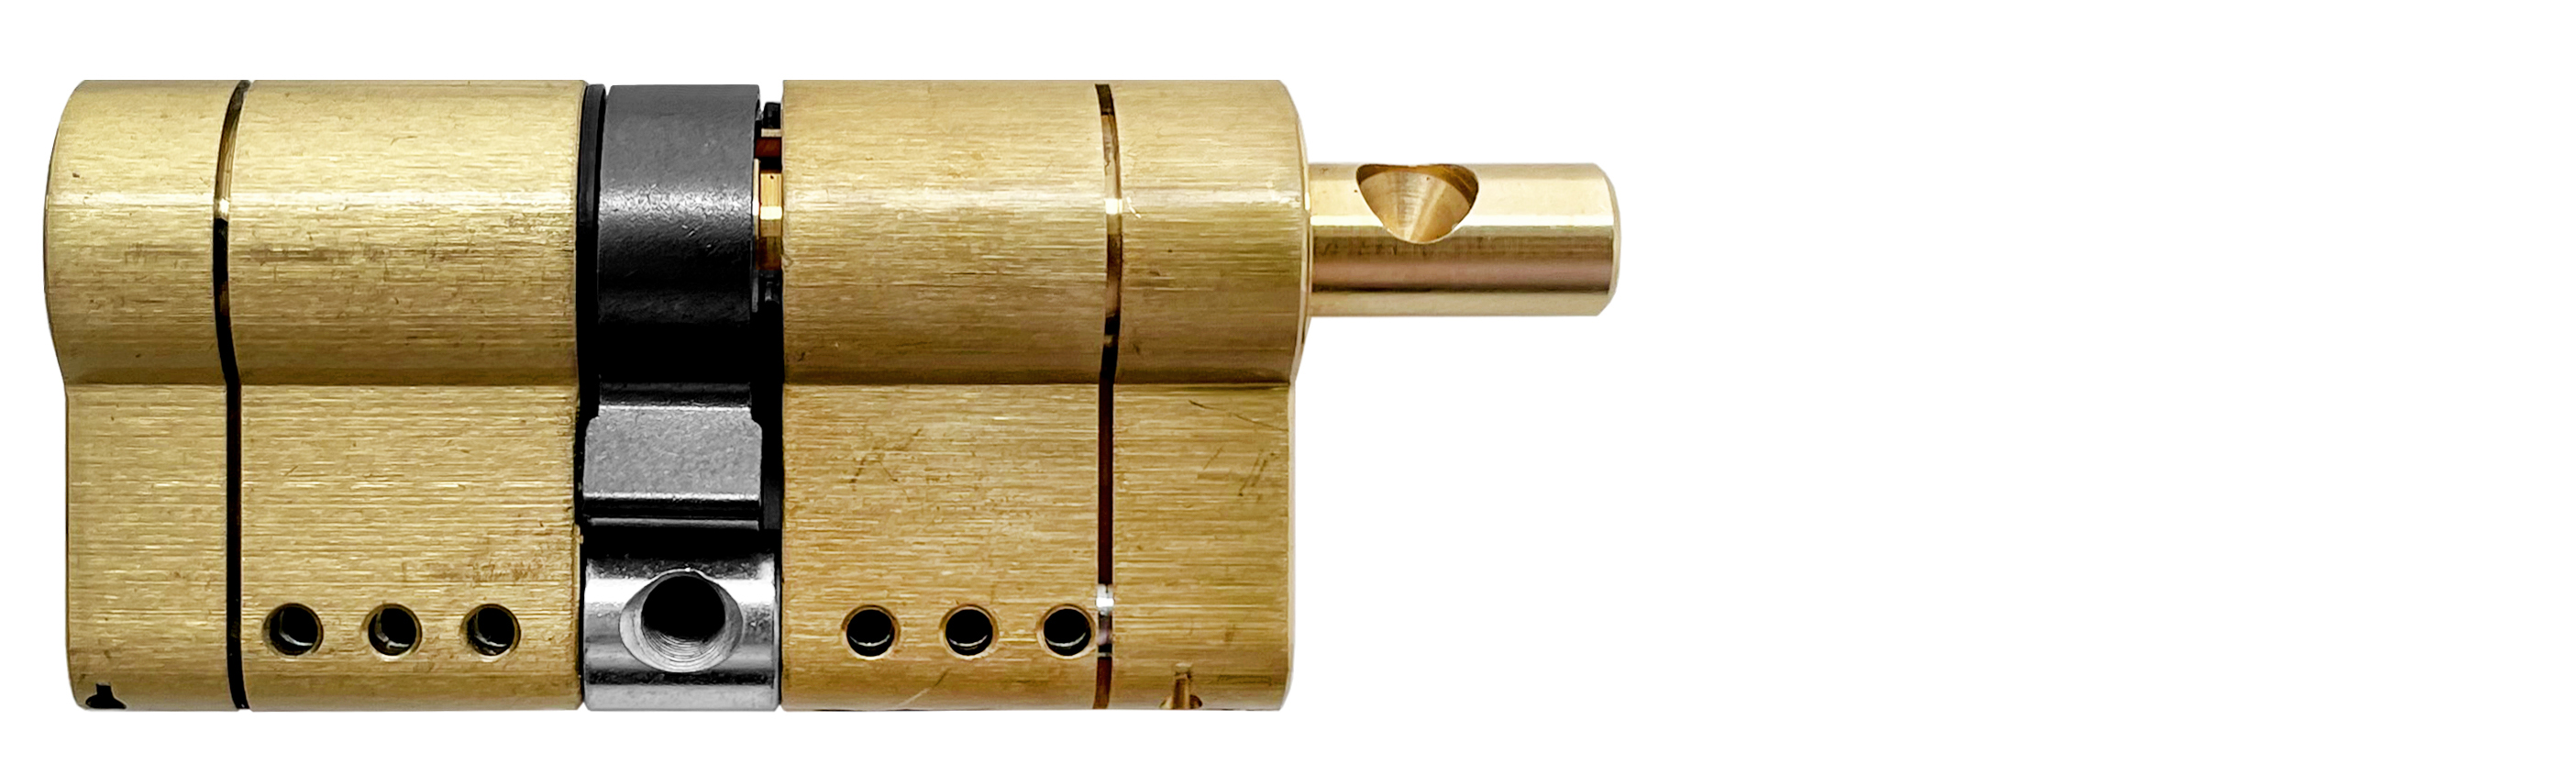 Цилиндр MOTTURA PRO 82(41+41)мм, ключ/вертушка, латунь формы для наращивания ногтей узкие 50 шт золотистый